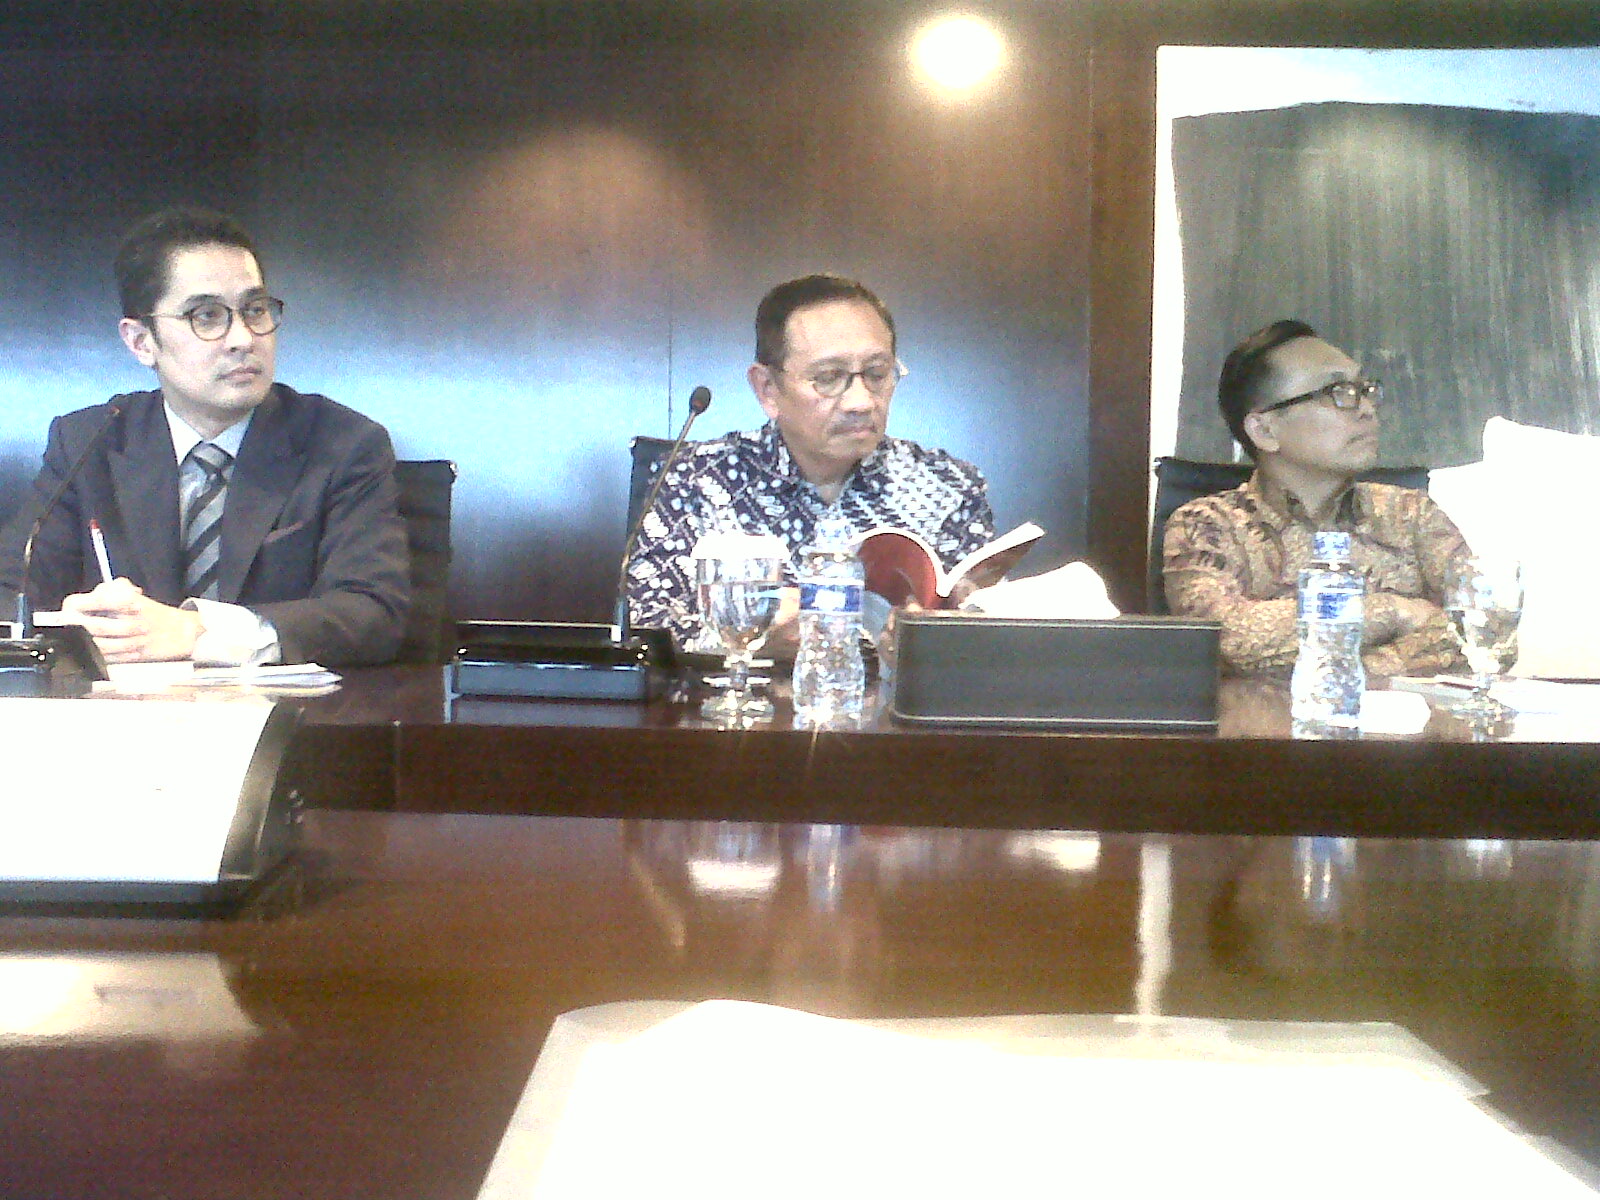 Kiri ke kanan: Andre Rahadian (Partner HPRP), Tengku Burhanuddin (Sekjen INACA), dan Arif Wibowo (Ketua INACA) dalam acara peluncuran buku di Kantor HPRP, Jakarta, Selasa (17/2). Foto: RZK